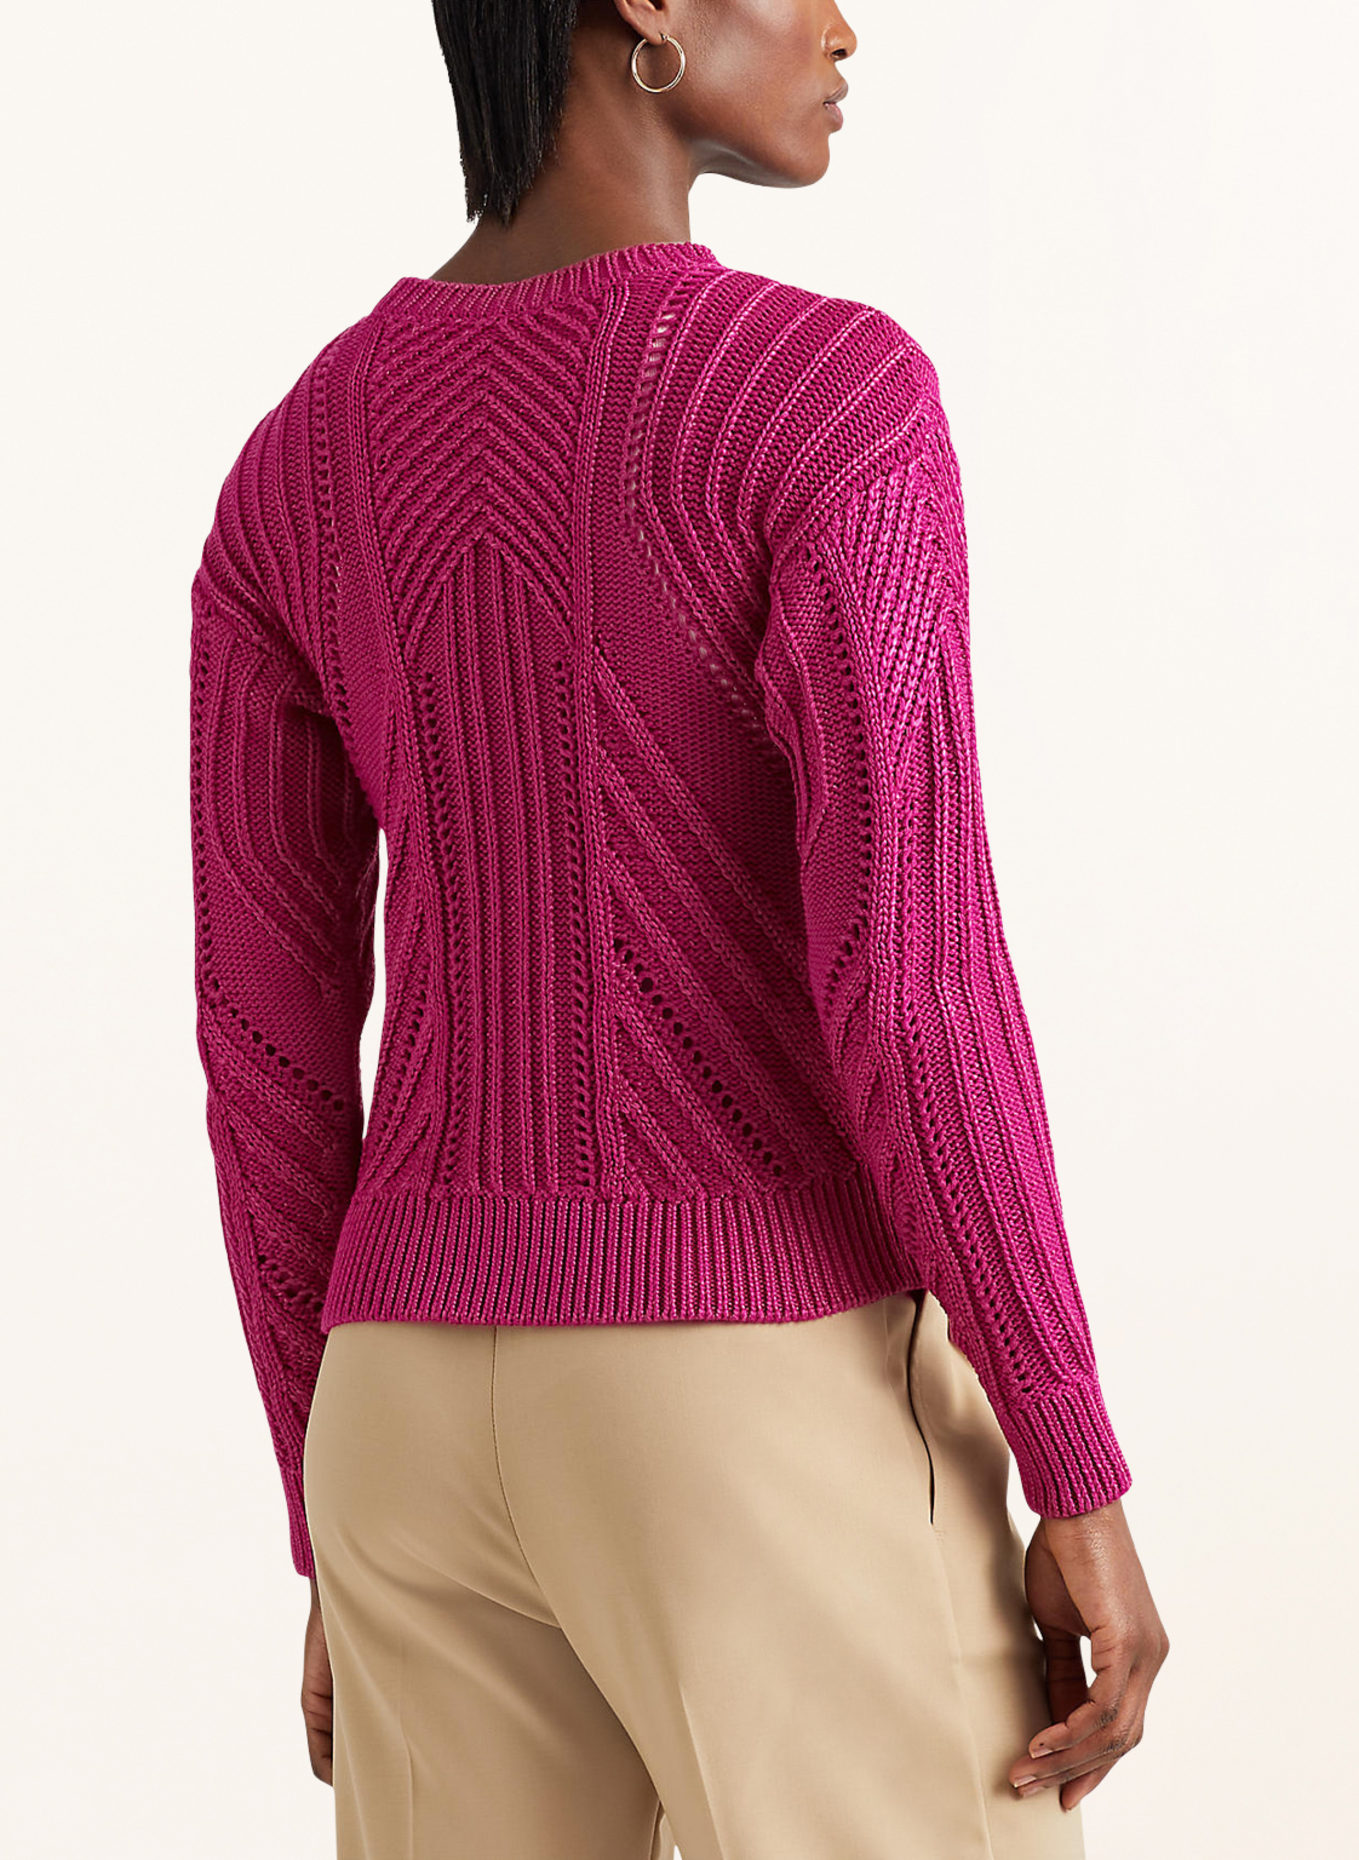 LAUREN RALPH LAUREN Sweater, Color: FUCHSIA (Image 3)